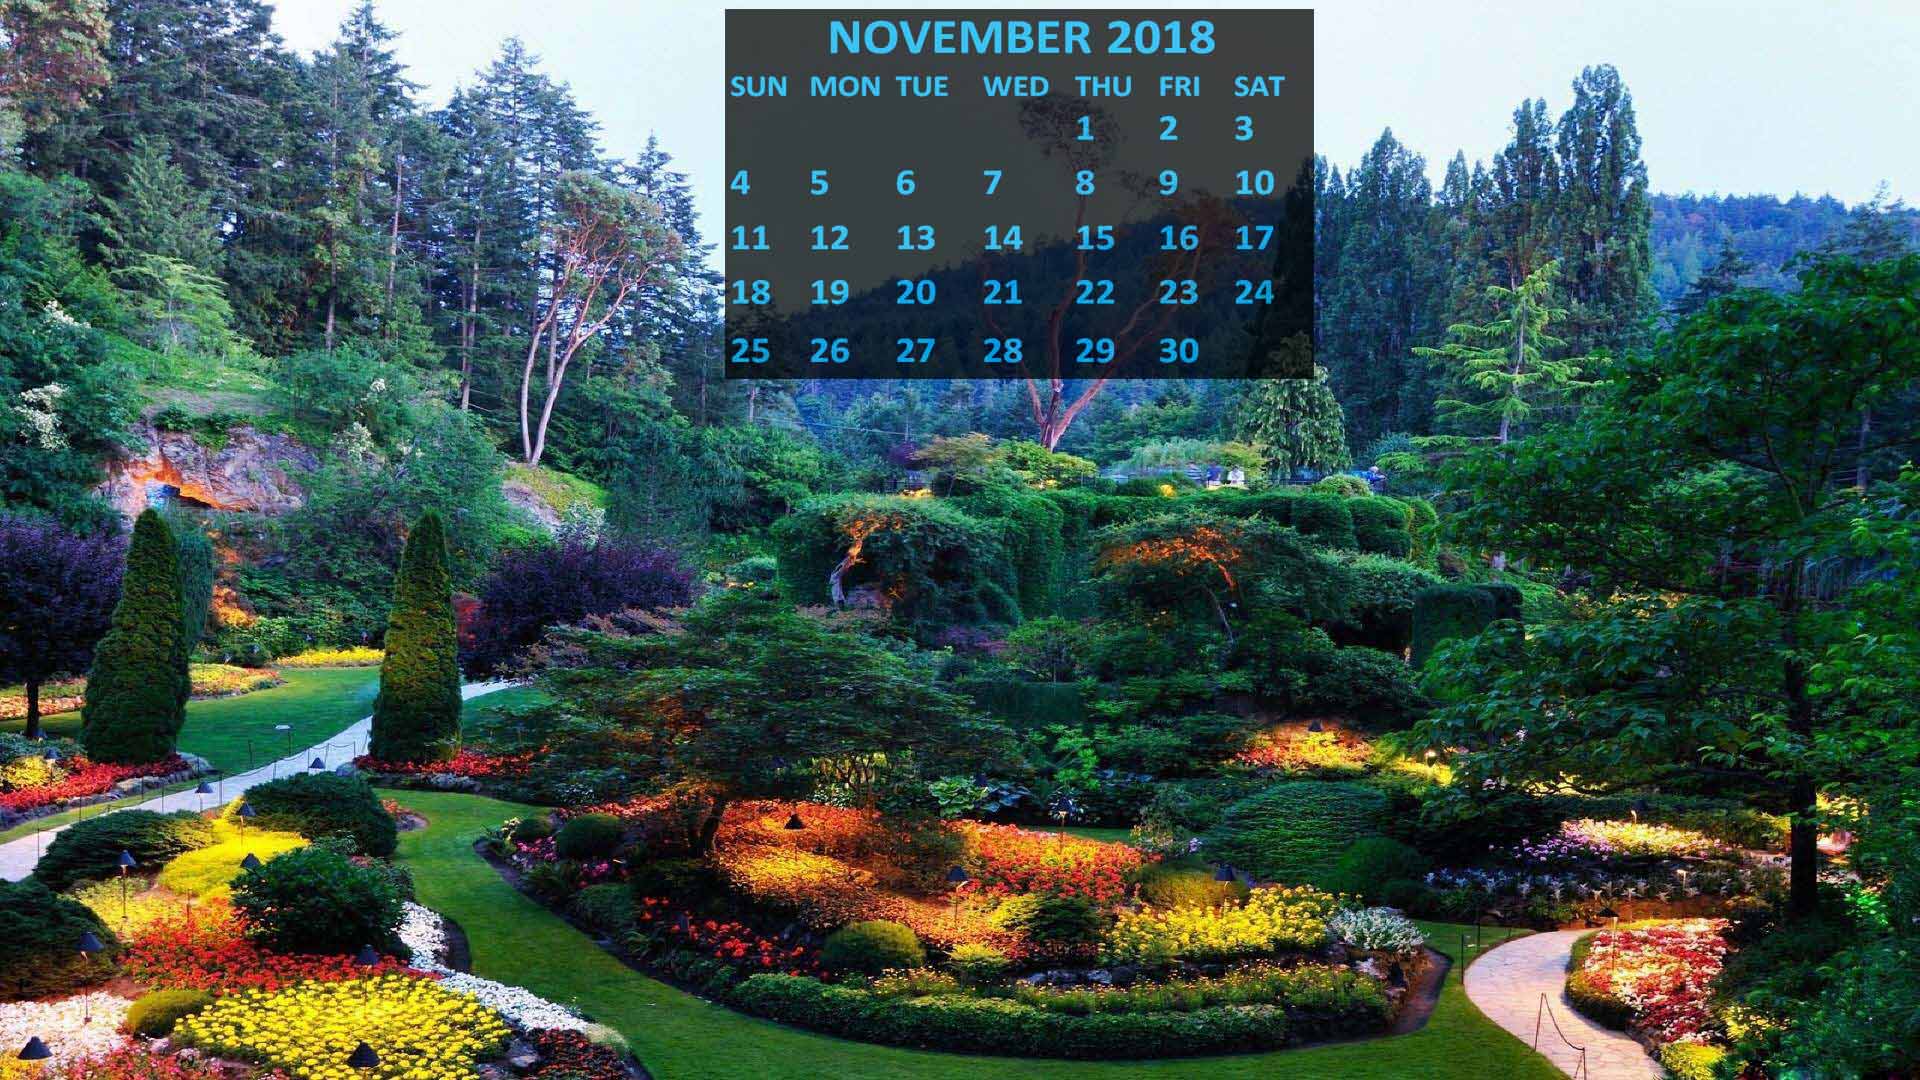 calendar wallpaper,natural landscape,nature,botanical garden,garden,vegetation